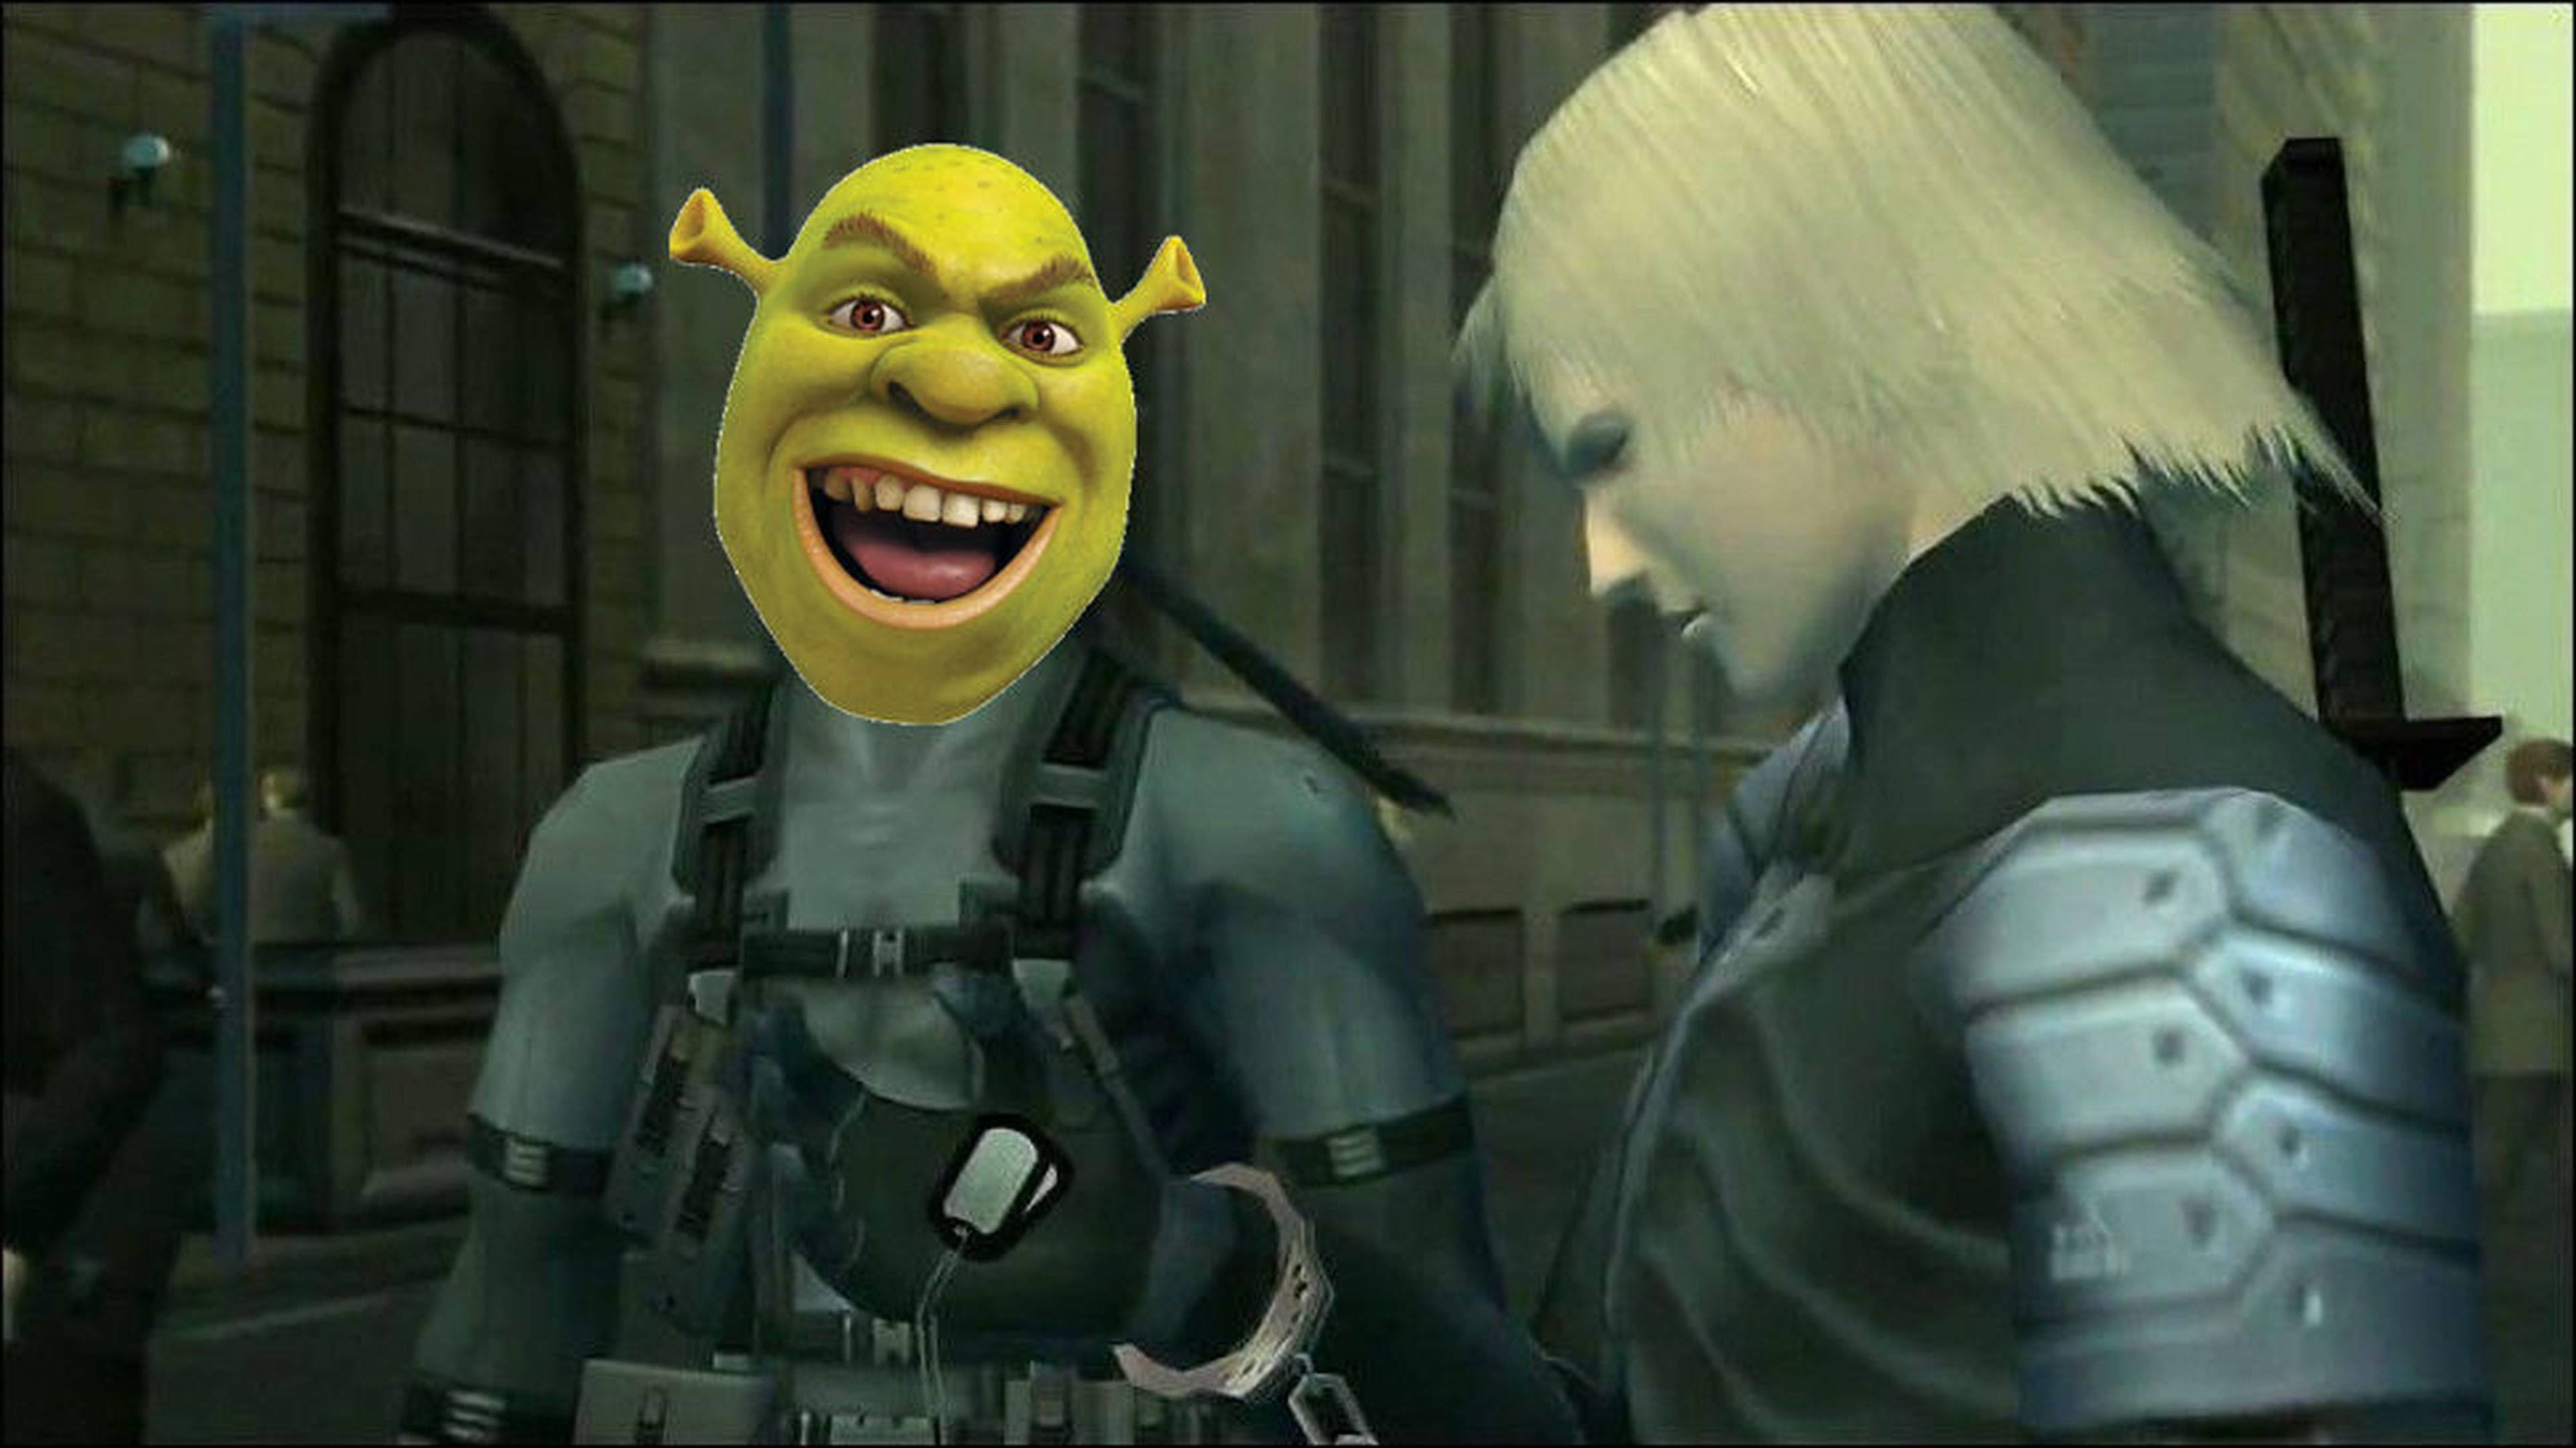 La sorprendente conexión entre Metal Gear Solid 2 y Shrek